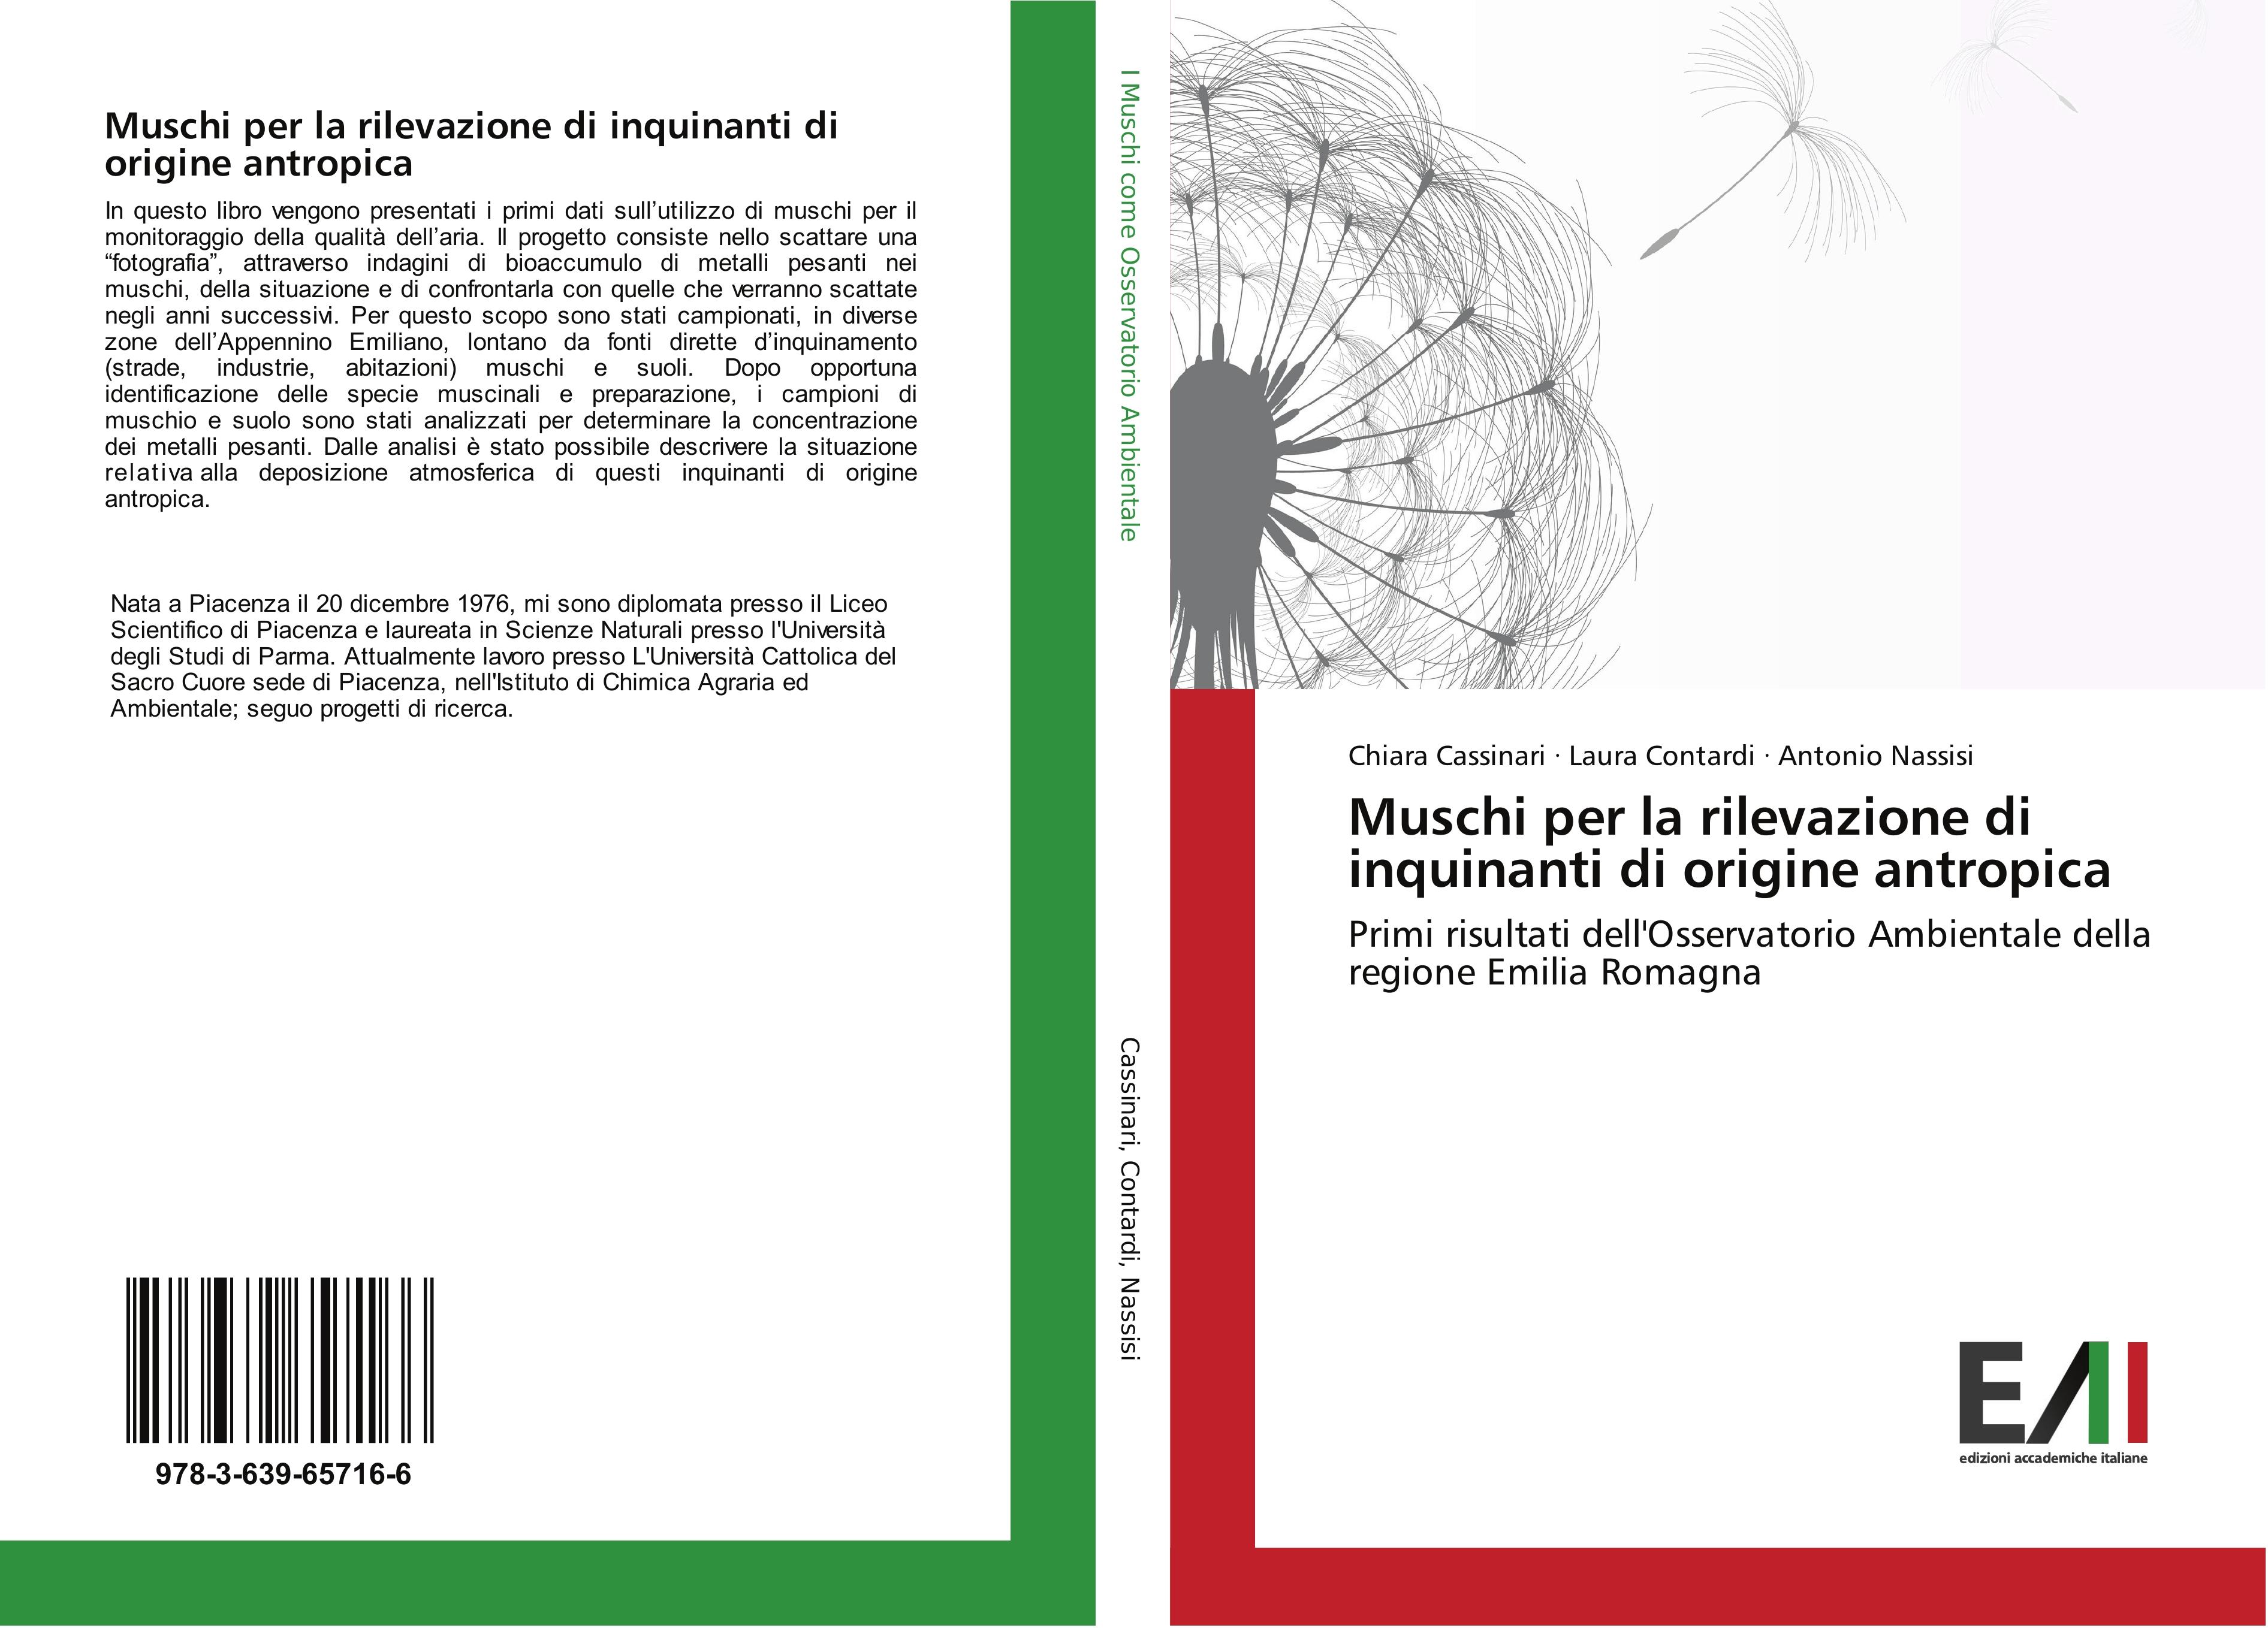 Muschi per la rilevazione di inquinanti di origine antropica - Chiara Cassinari Laura Contardi Antonio Nassisi